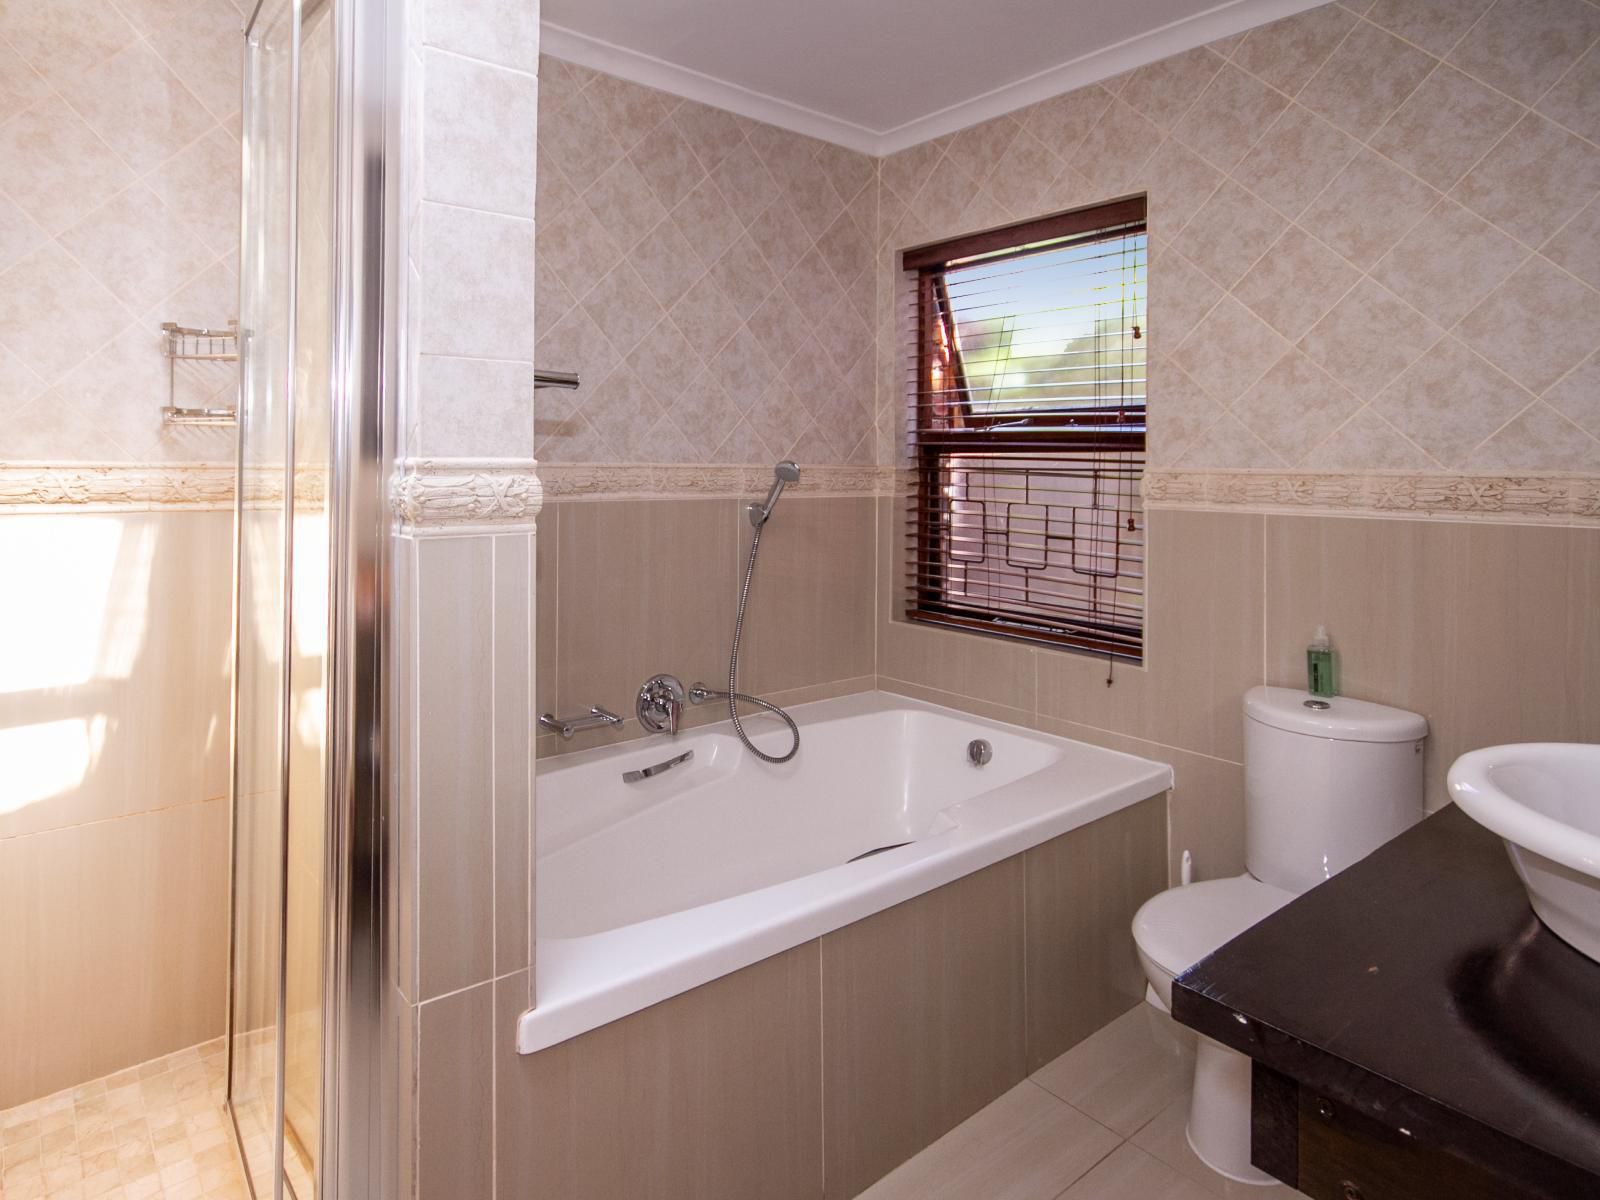 O Hannas Bandb Royal House Plettenberg Bay Western Cape South Africa Bathroom